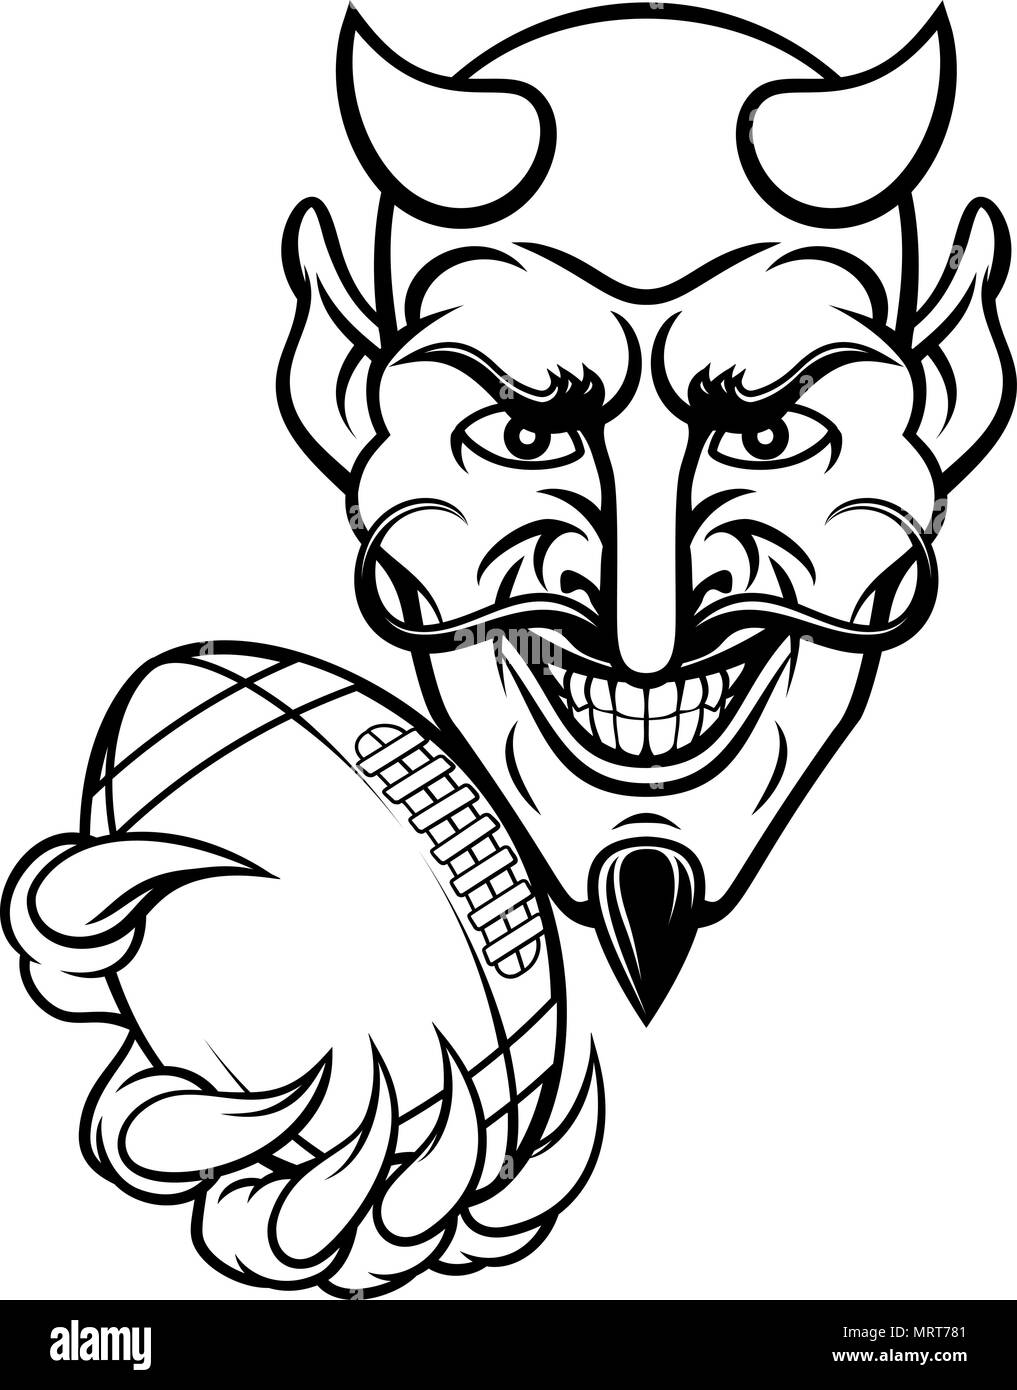 Sports Football Américain Devil Mascot Illustration de Vecteur